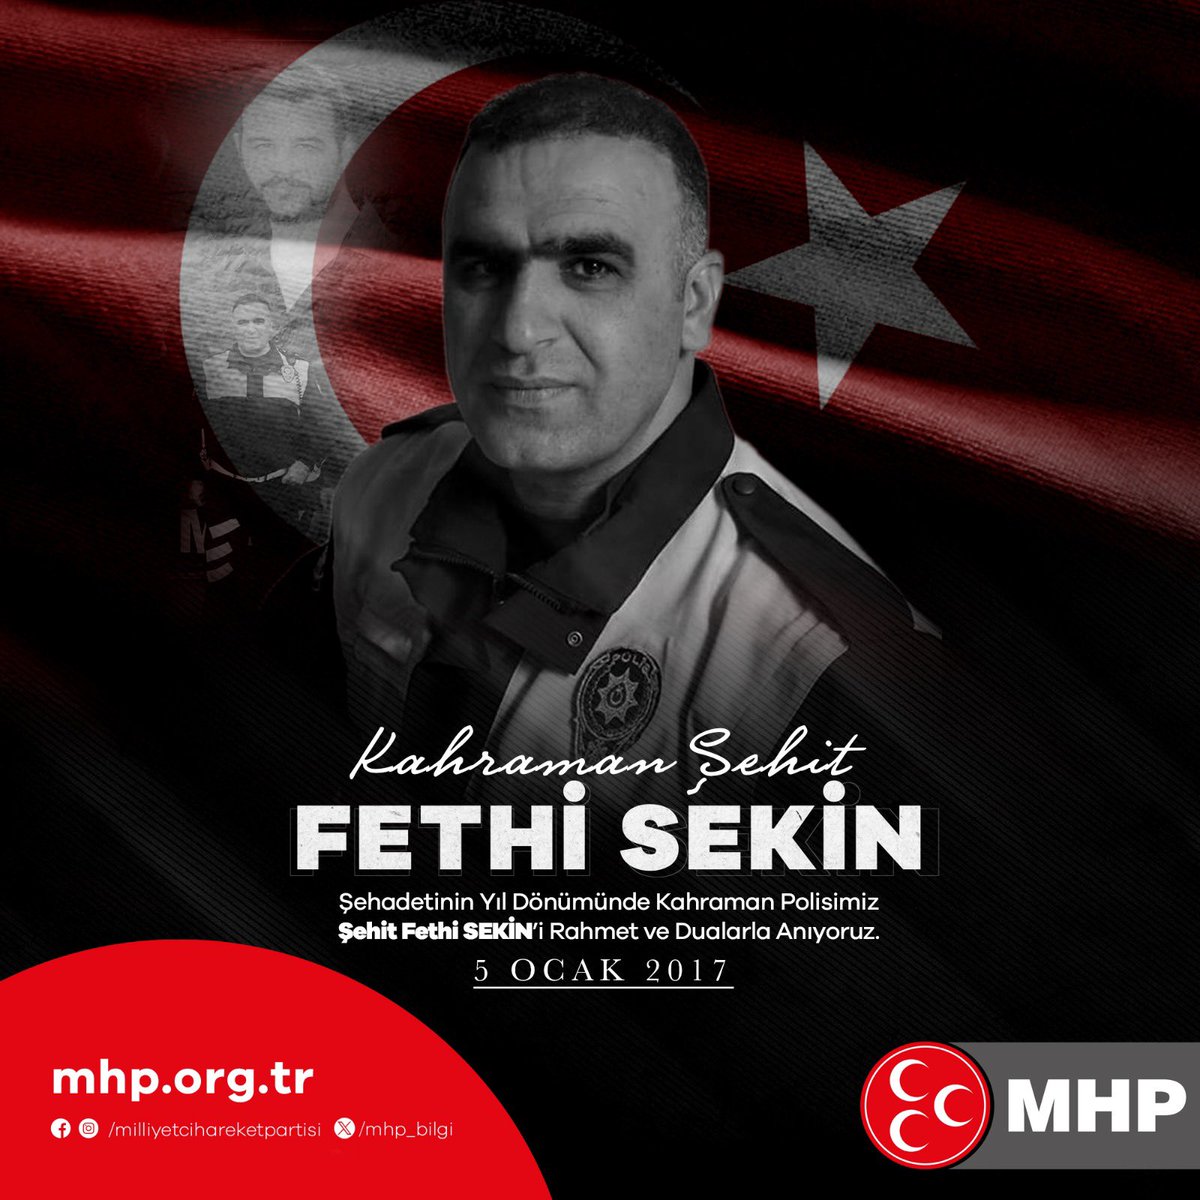 Şehadetinin Yıl Dönümünde Kahraman Polisimiz Şehit #FethiSekin’i Rahmet ve Dualarla Anıyoruz.